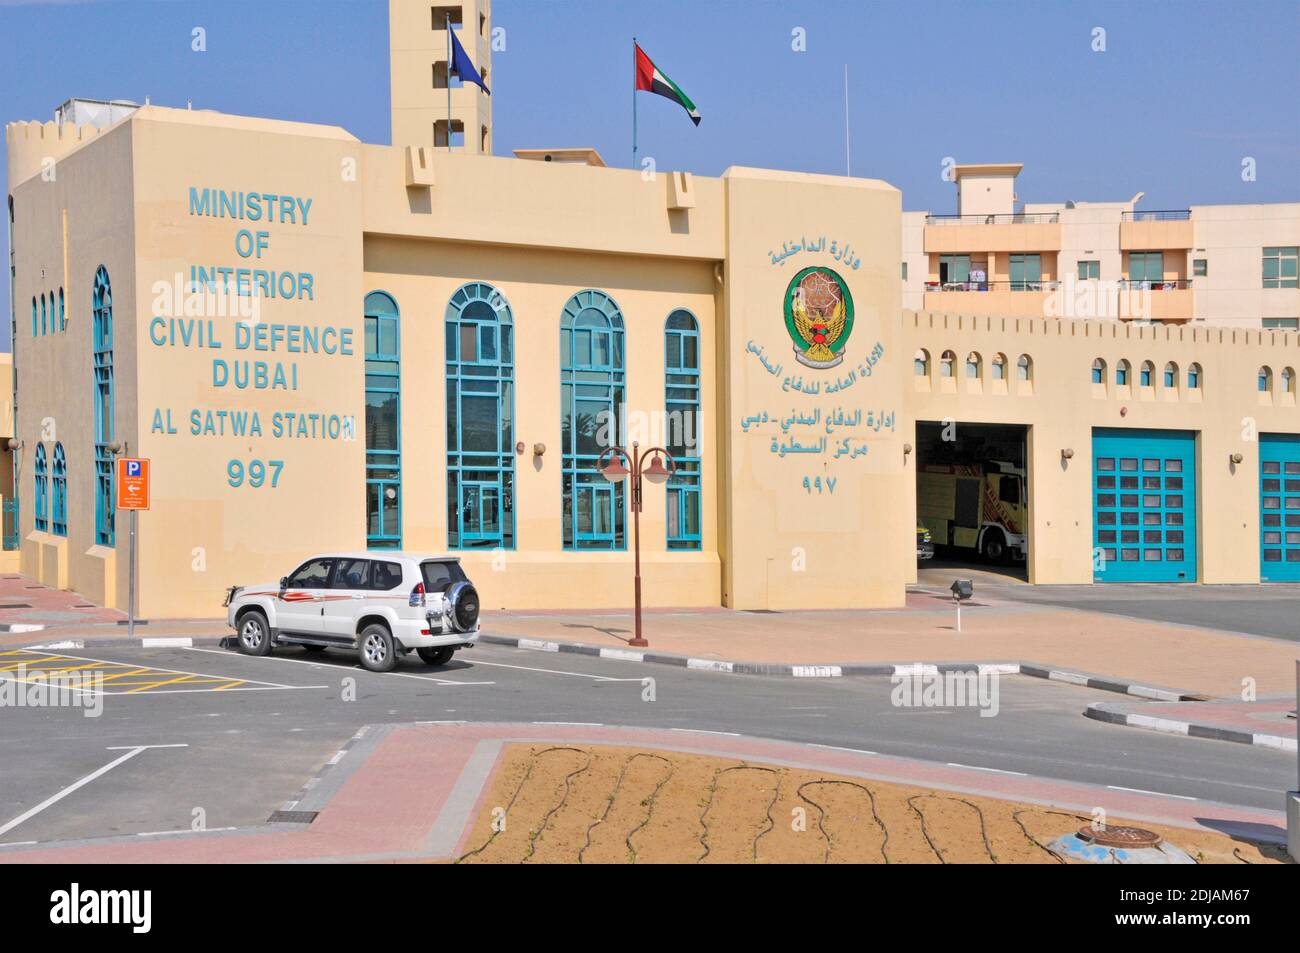 Façade du Ministère de l'intérieur de Dubaï Al Satwa Bâtiment Fire Staion 997 avec volet ouvert et moteur d'incendie Camion Émirats arabes Unis Banque D'Images